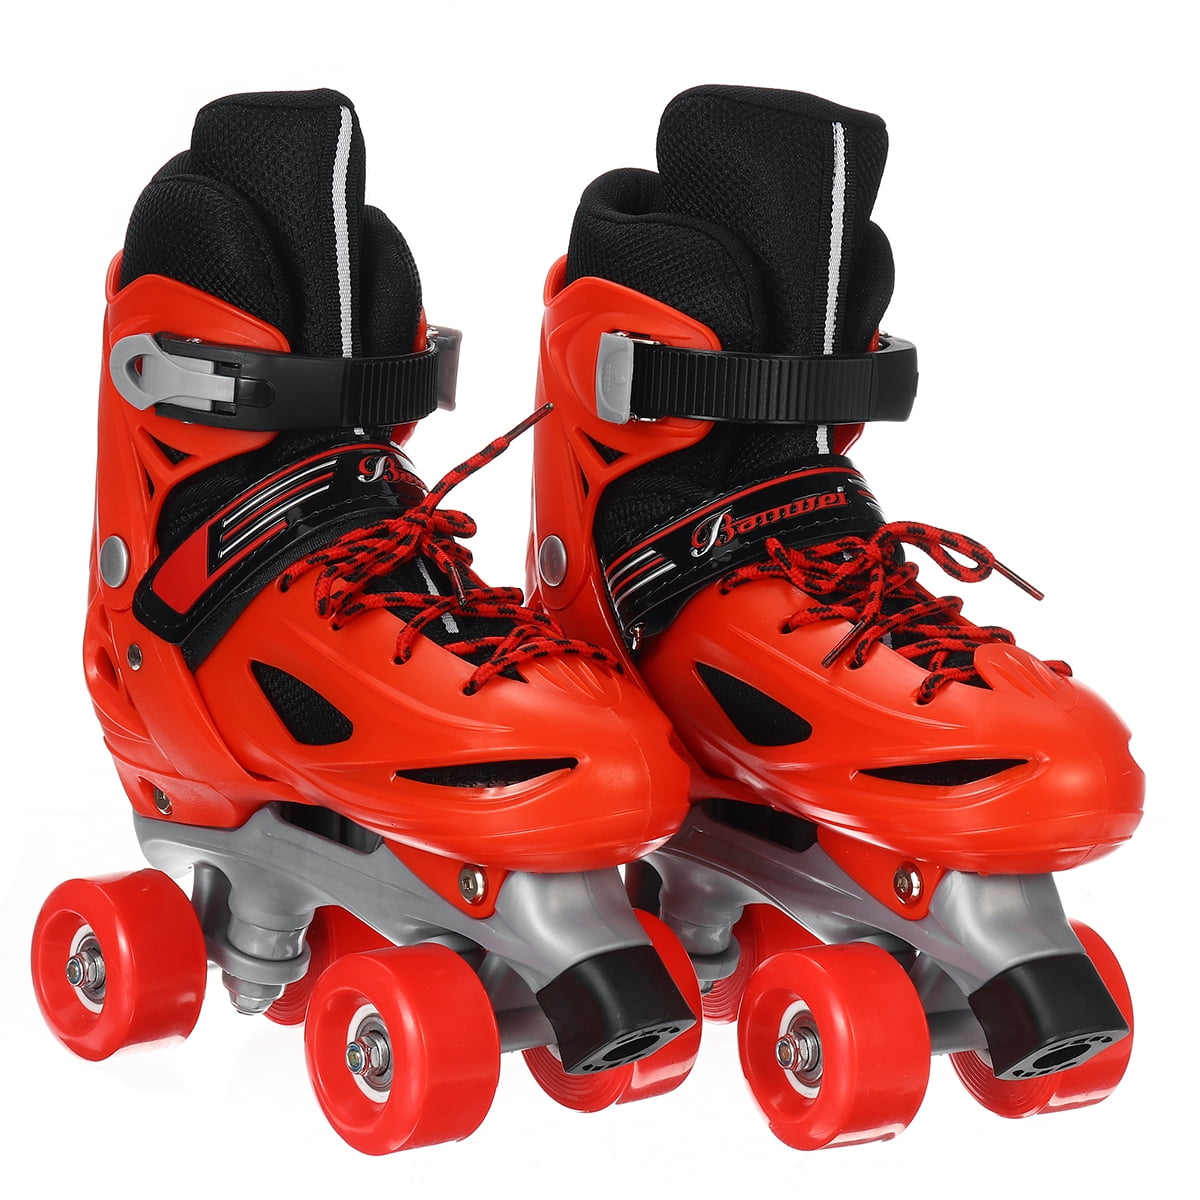 Adjustable Kids Girls Boys Rink Skates 4 Wheels Quad Roller Skates Skating Shoes 